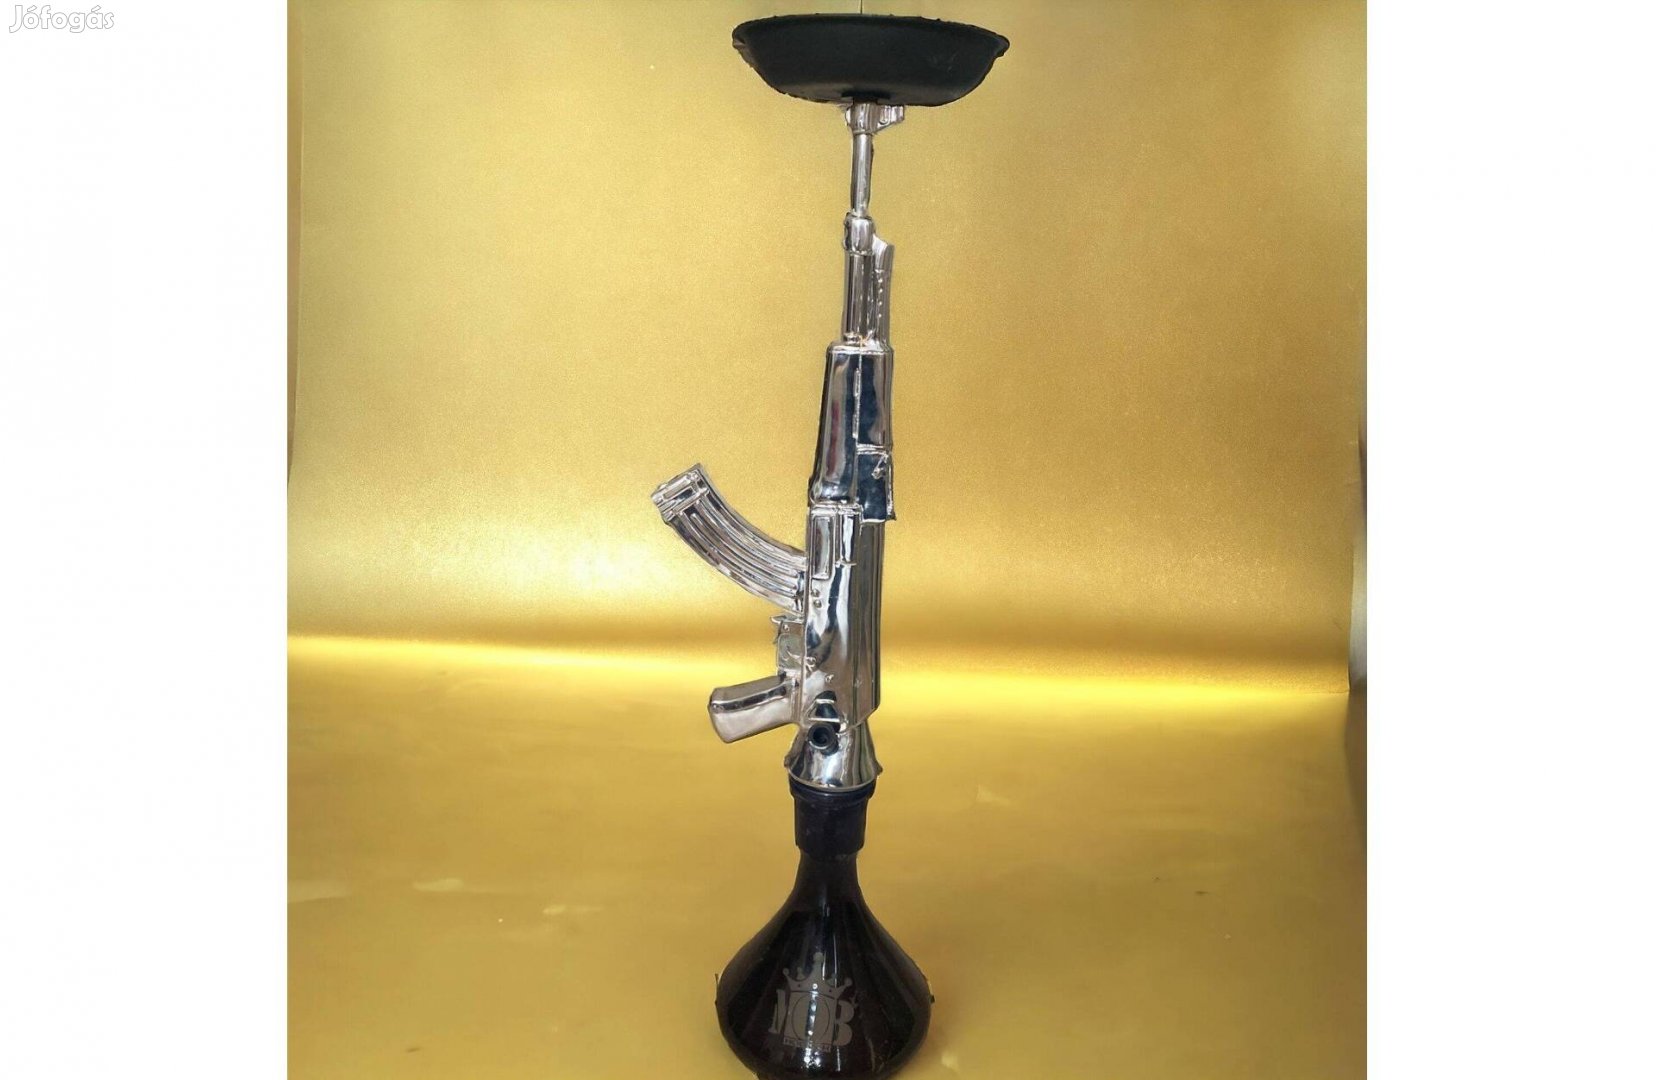 AK 47 MOB Vízipipa, fém, 70cm magas